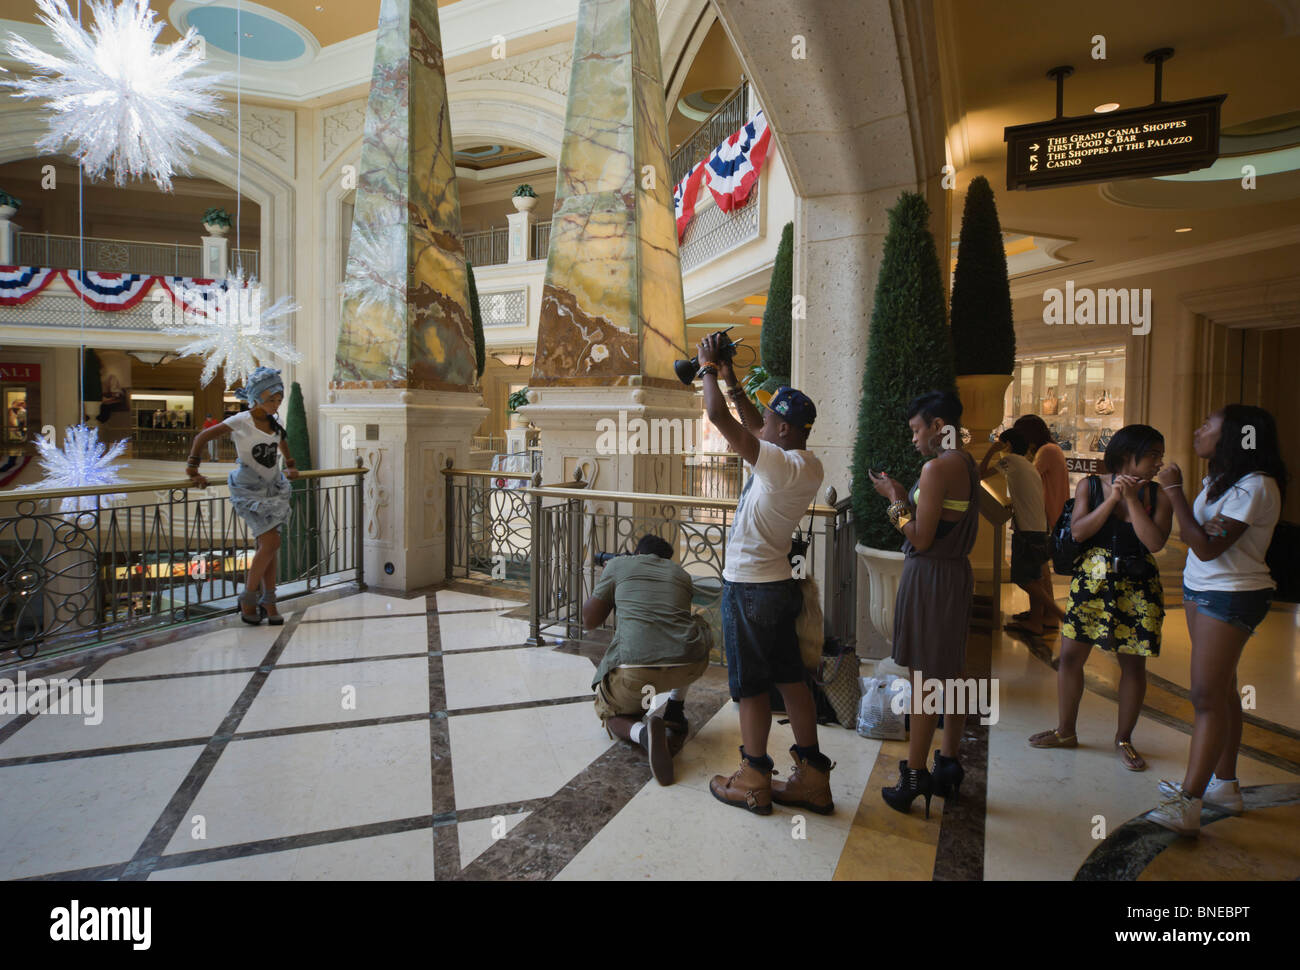 Le Venetian Las Vegas - Venise réplique. Une séance photo pour un magazine de mode se déroule à l'intérieur de la Mall. Banque D'Images